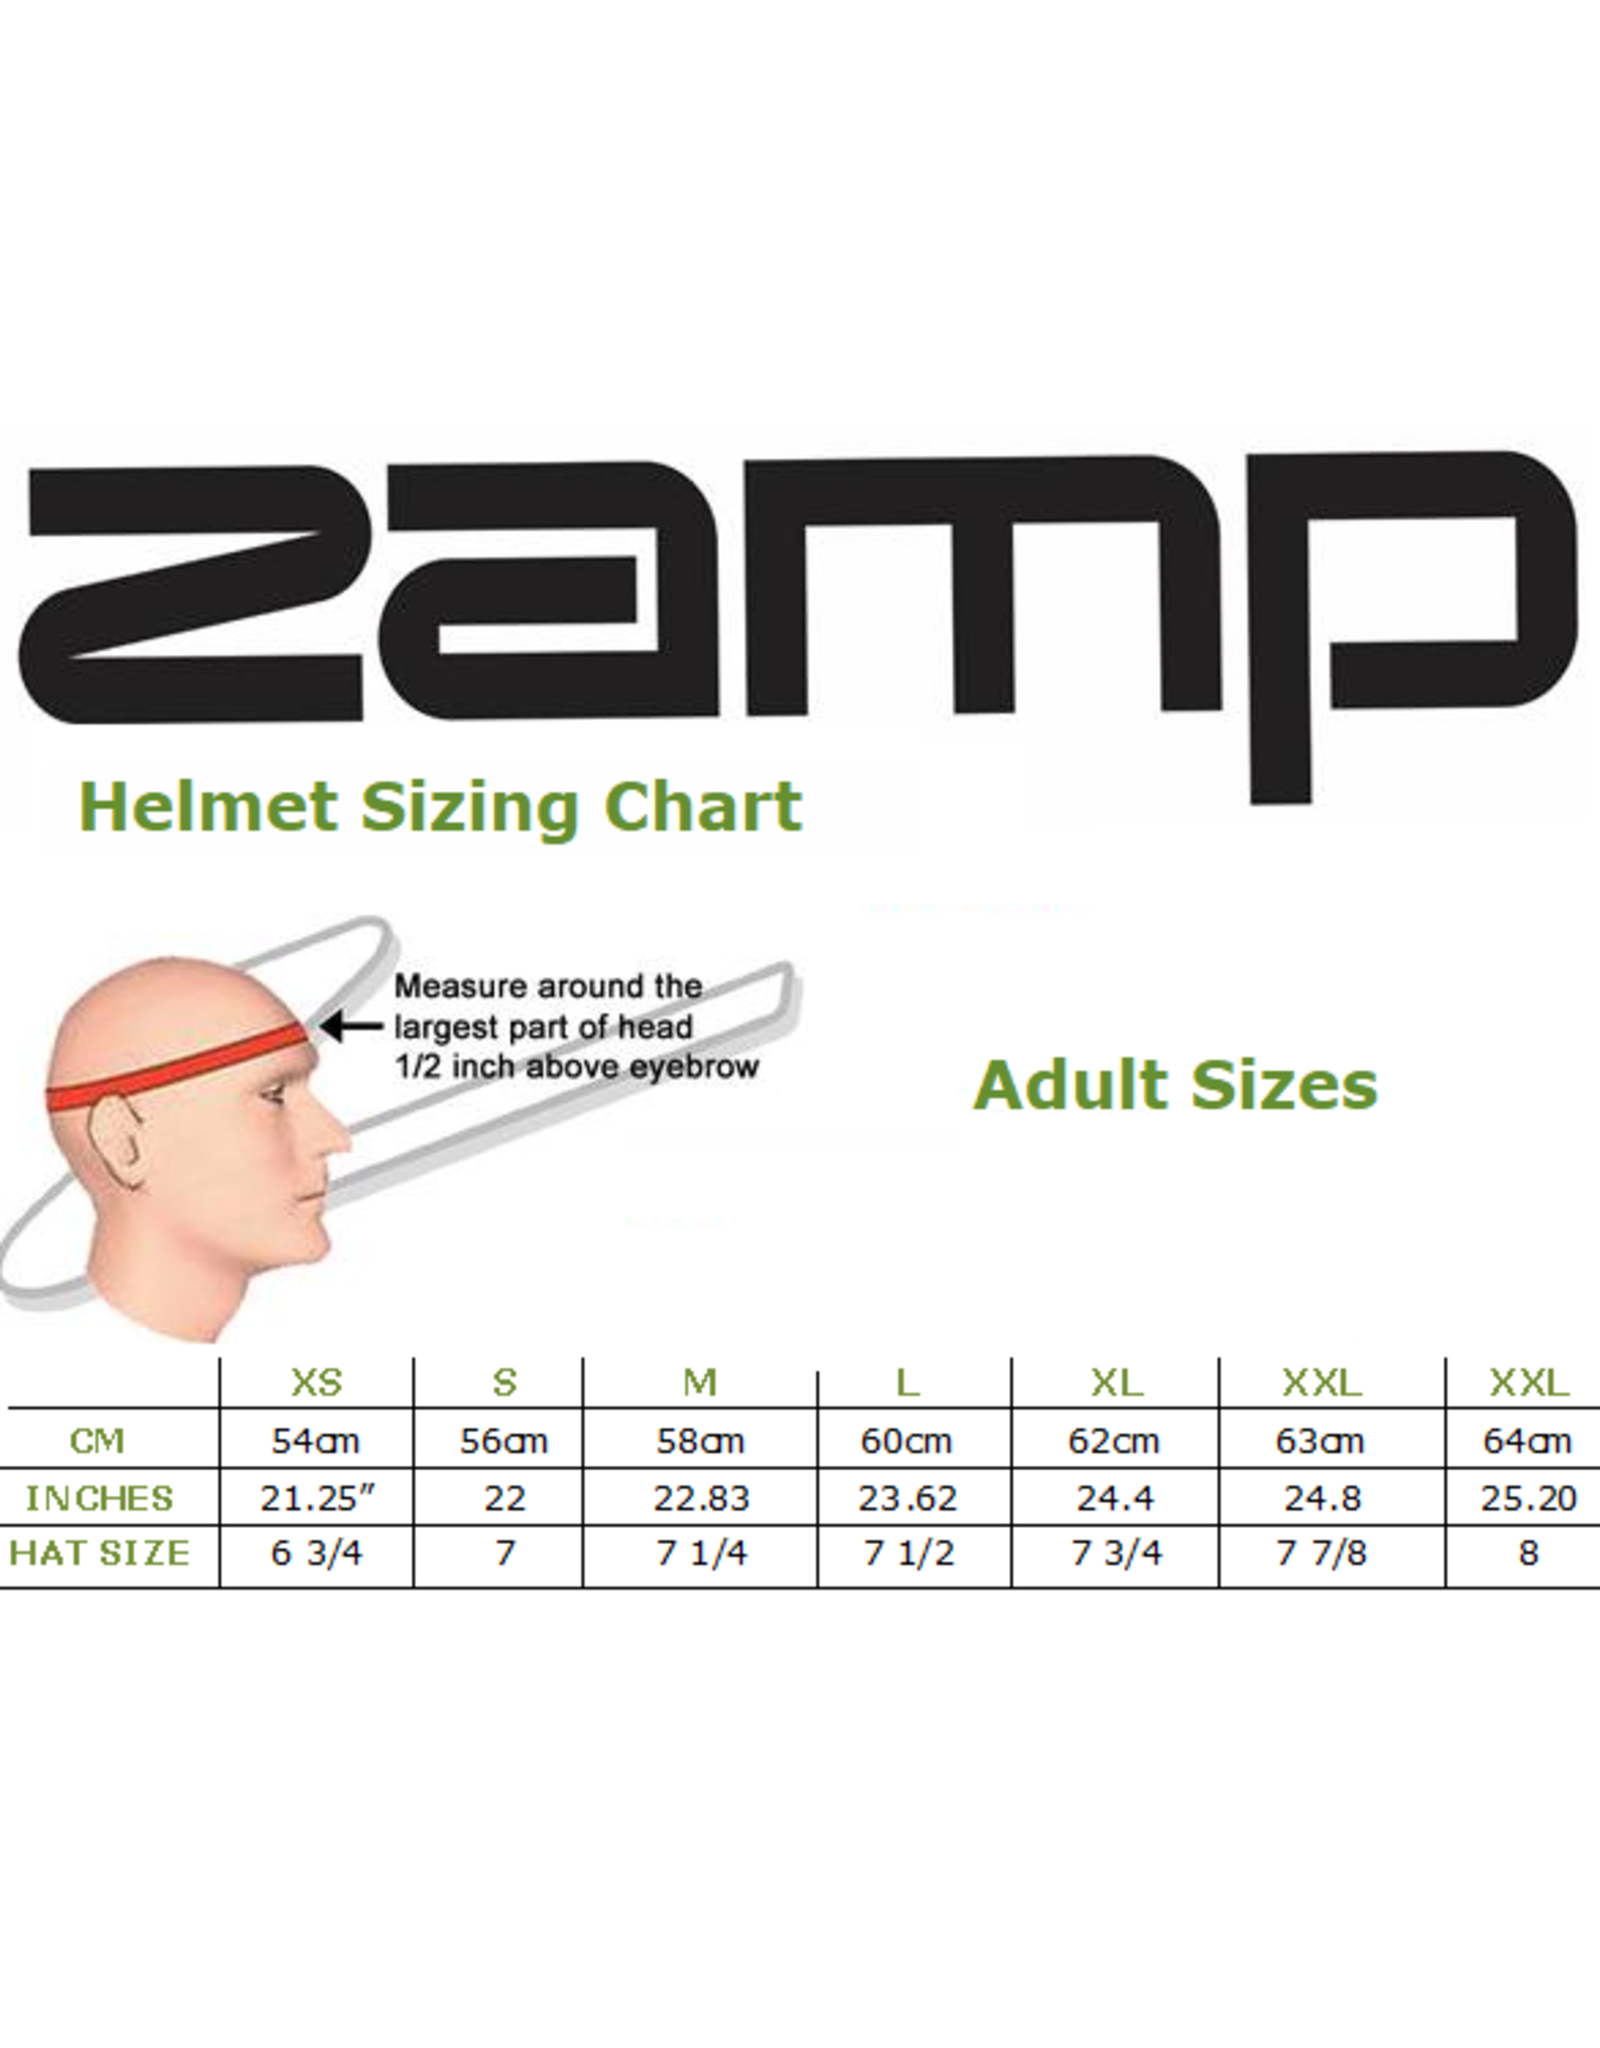 Zamp Zamp RZ-70E Switch Rood / zwart / blauw  (FIA-8859 / SNEL 2020)